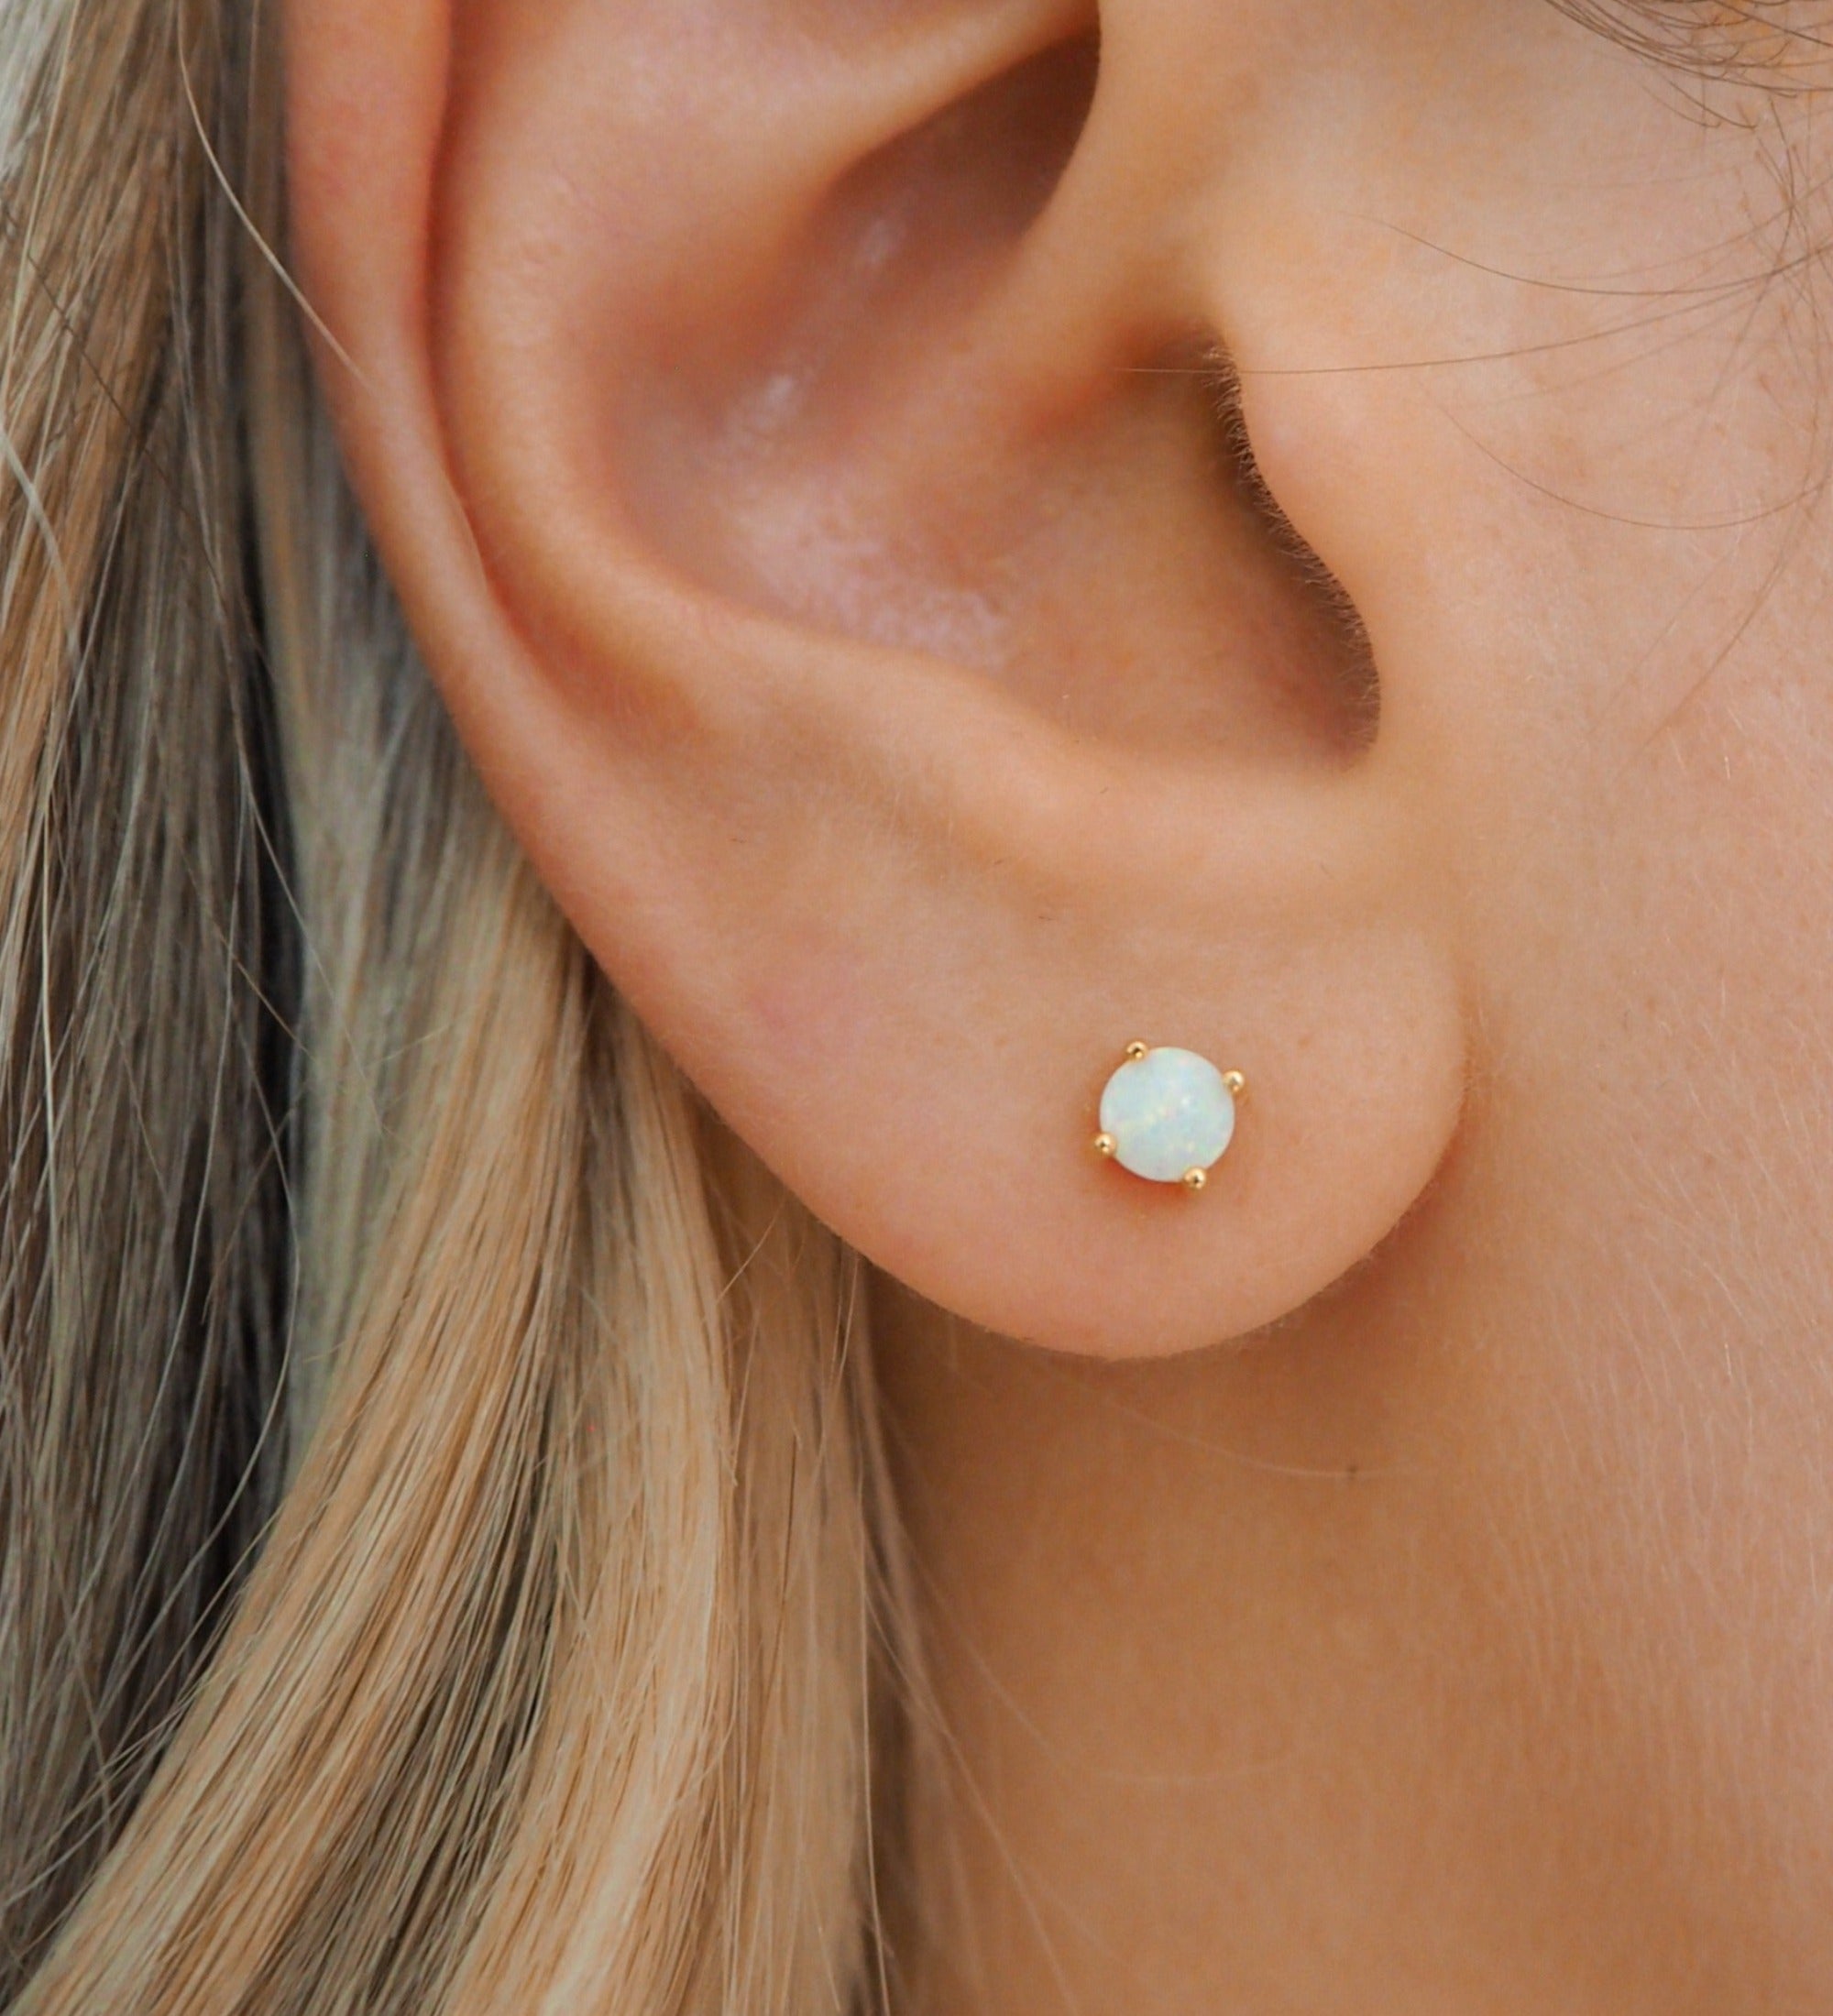 YYW Wholesale Jewelry Moonstone Teardrop Earrings White Sea Opal Drop  Dangle Earrings for Women Gift Brincos Fashion Jewelry - AliExpress